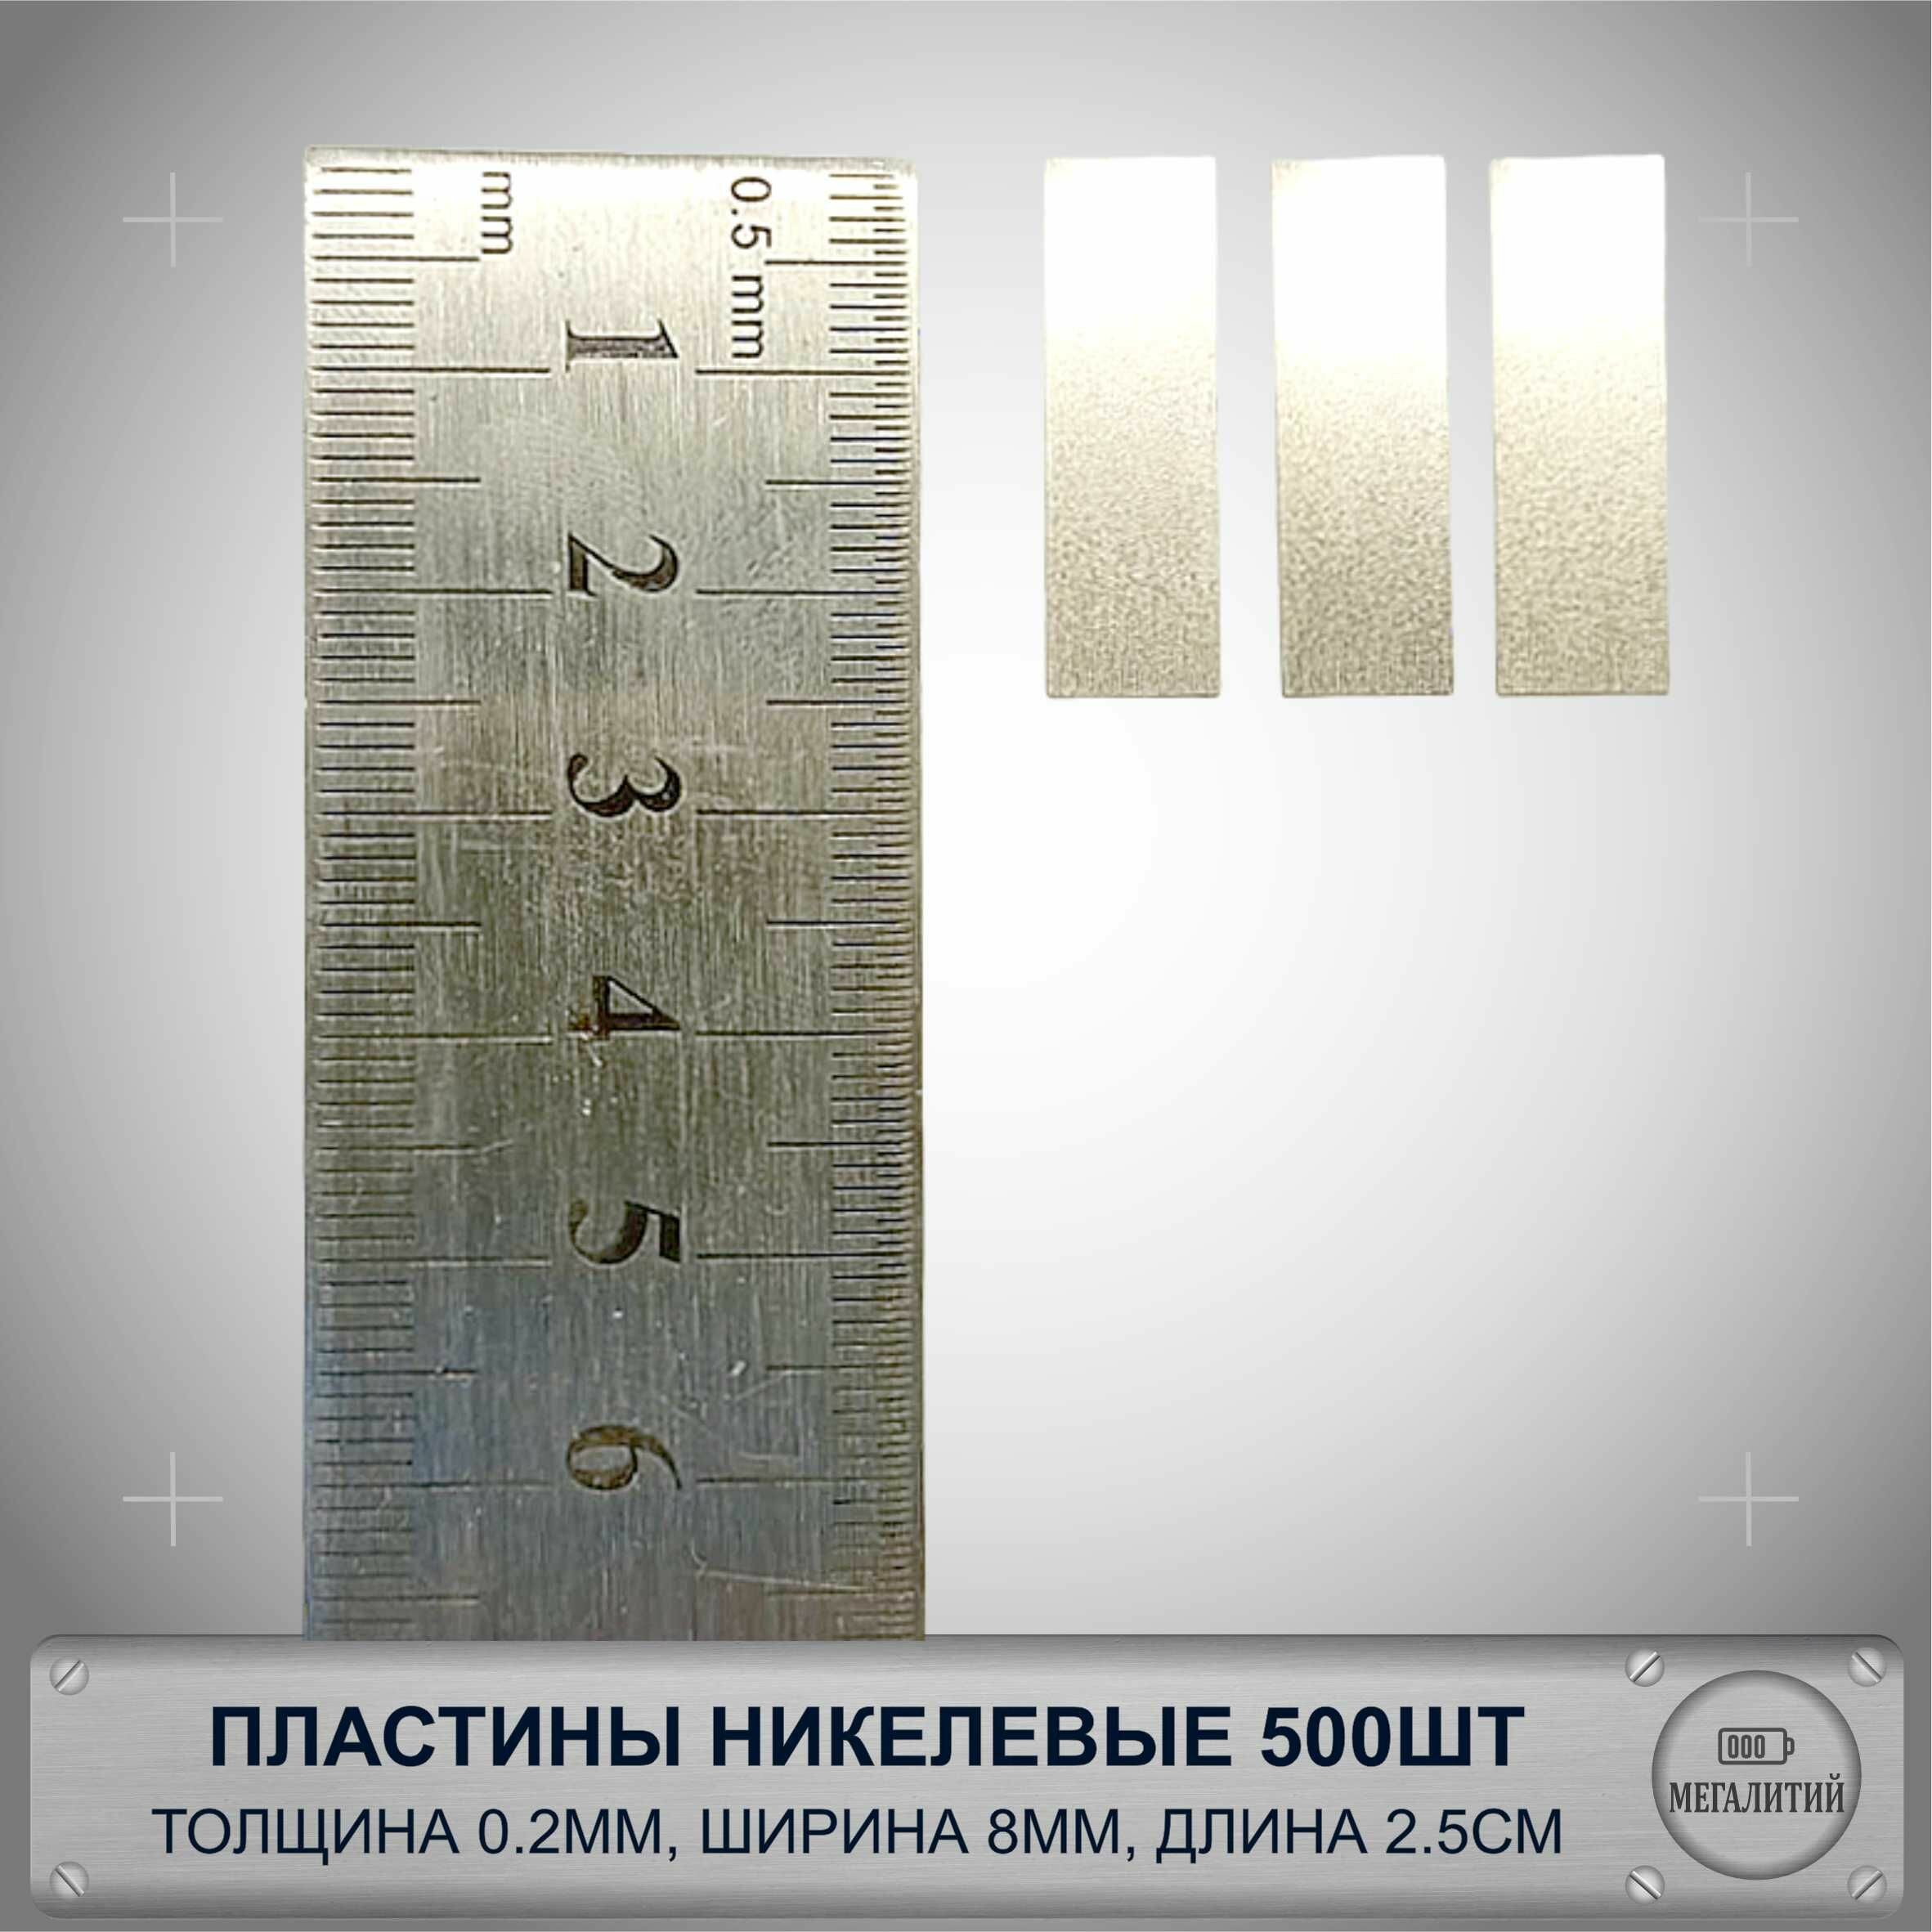 Пластины никелевые 0.2мм х 8мм х 2.5см 500шт. для соединения точечной сваркой/пайкой контактов аккумуляторов